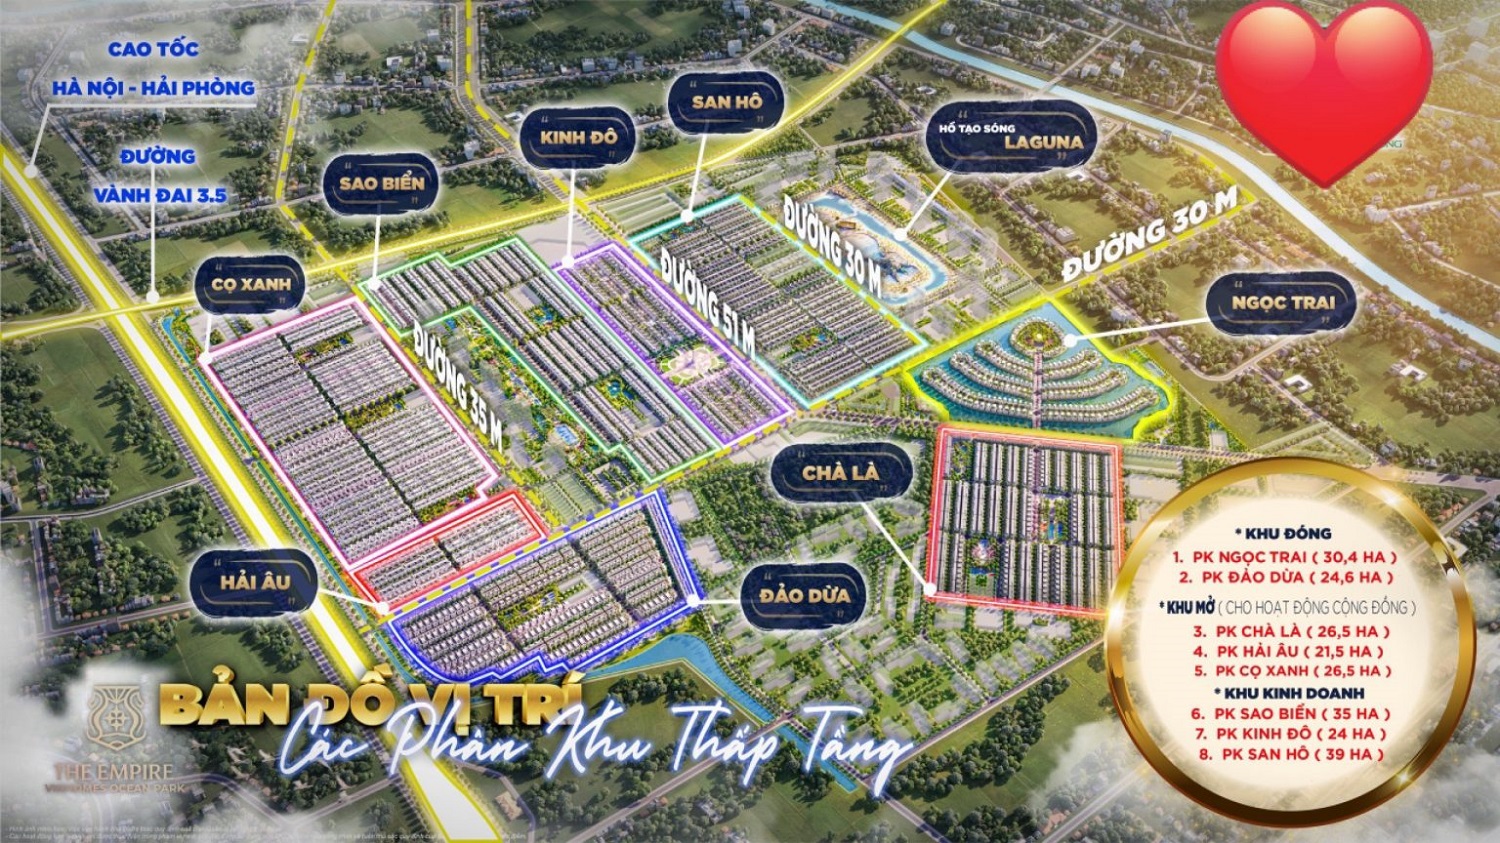 Dự án Vinhomes Hưng Yên có tên gọi Vinhomes Ocean Park – The Empire 2 được xem là một trong những dự án có sức hút lớn trên thị trường bất động sản vô cùng lớn do sở hữu vị trí địa lý đắc địa giáp ranh với thành phố Hà Nội tại tỉnh Hưng Yên, chính vì thế tỉnh này được quy hoạch trở thành một trong những đô thị vệ tinh về phía đông của thủ đô sau này.